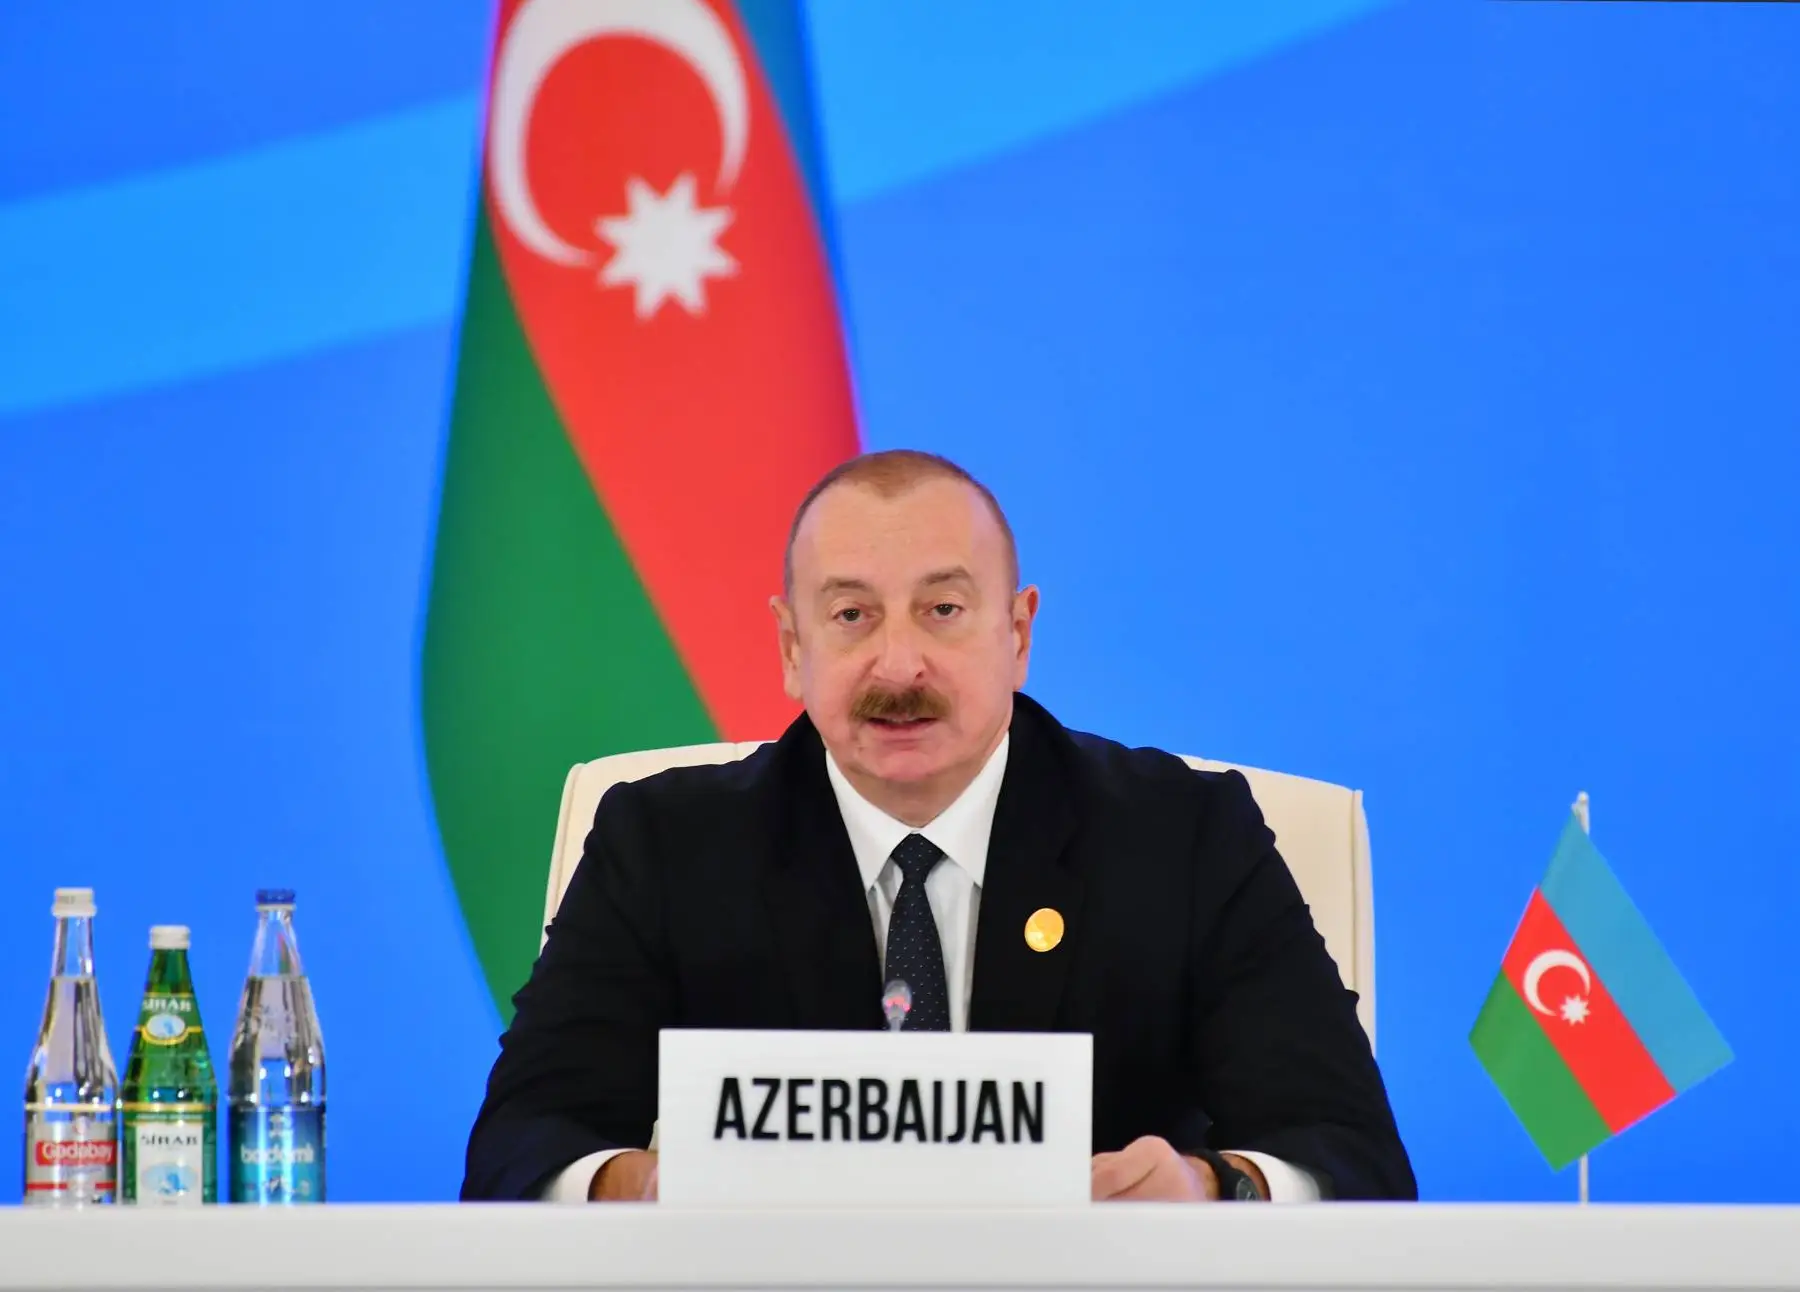 Τί λένε τα διεθνή ΜΜΕ για τις εκλογές στο Αζερμπαϊτζάν;